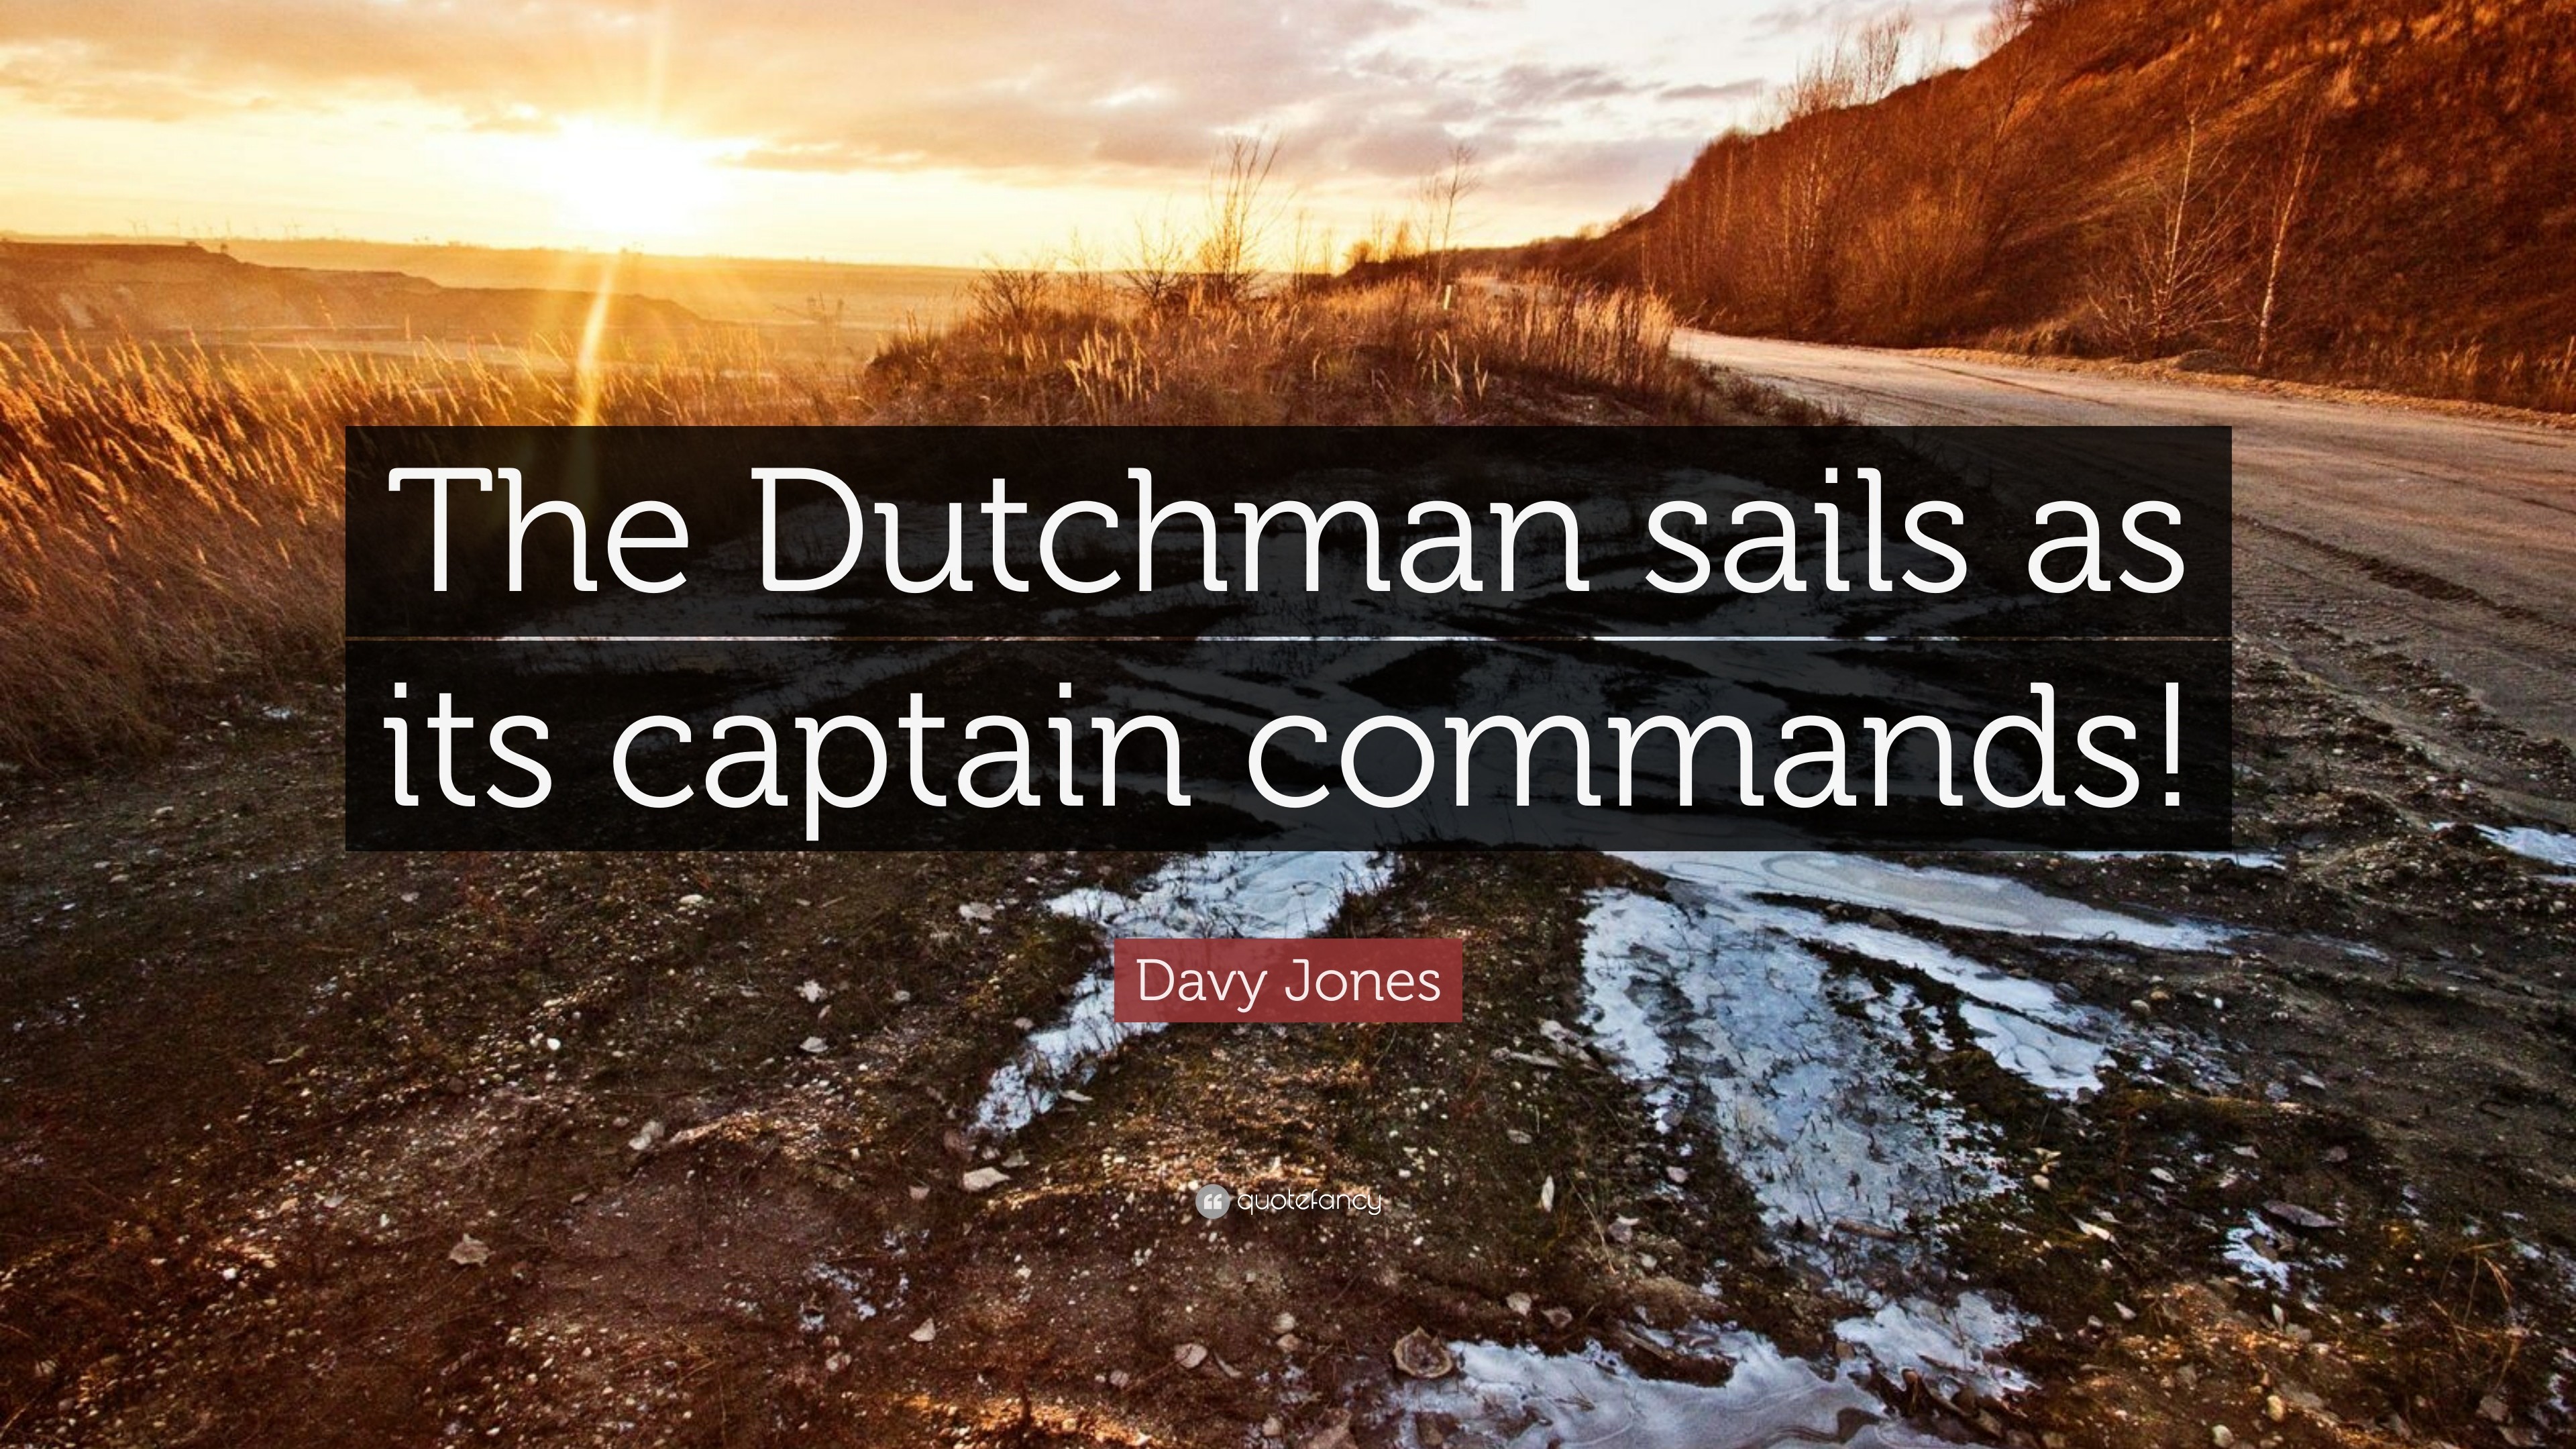 3840x2160 Davy Jones Quote: “The Dutchman sails as its captain commands!”